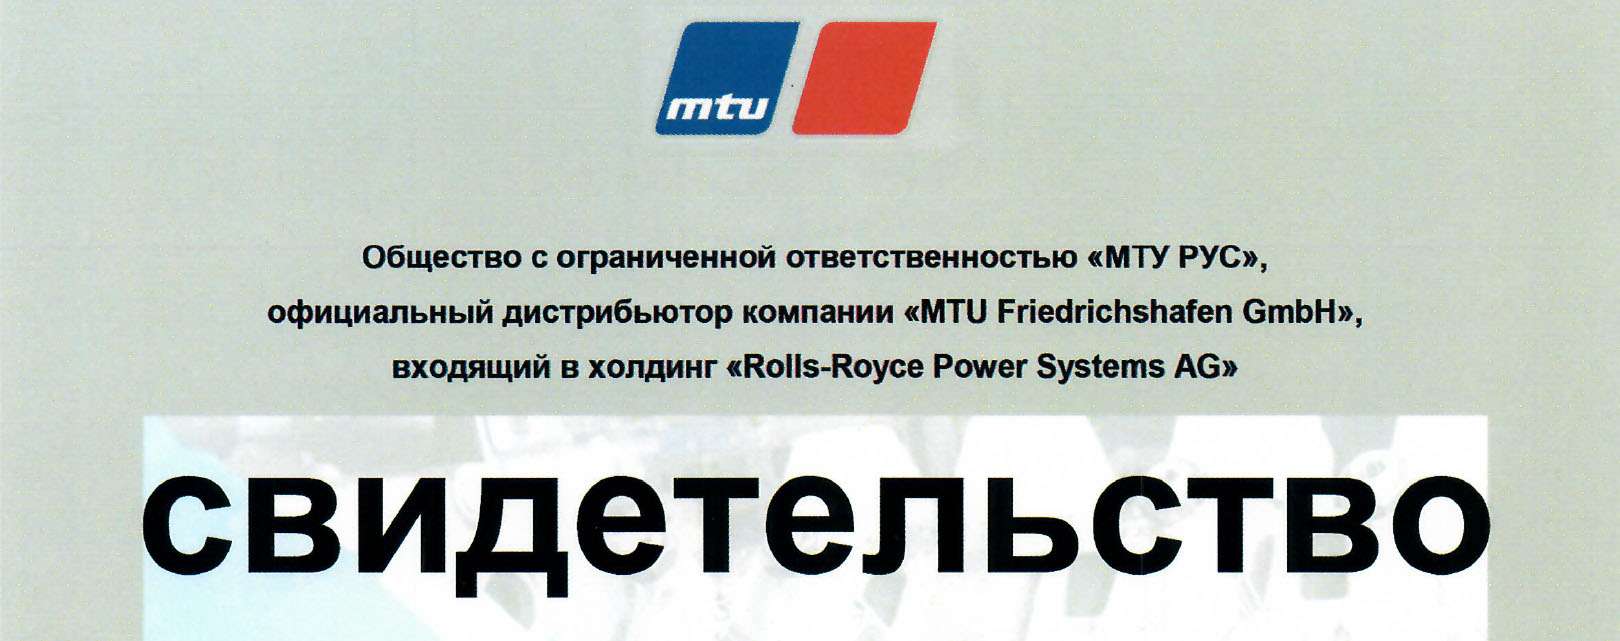 ROLT подтверждает статус сервисного партнера MTU